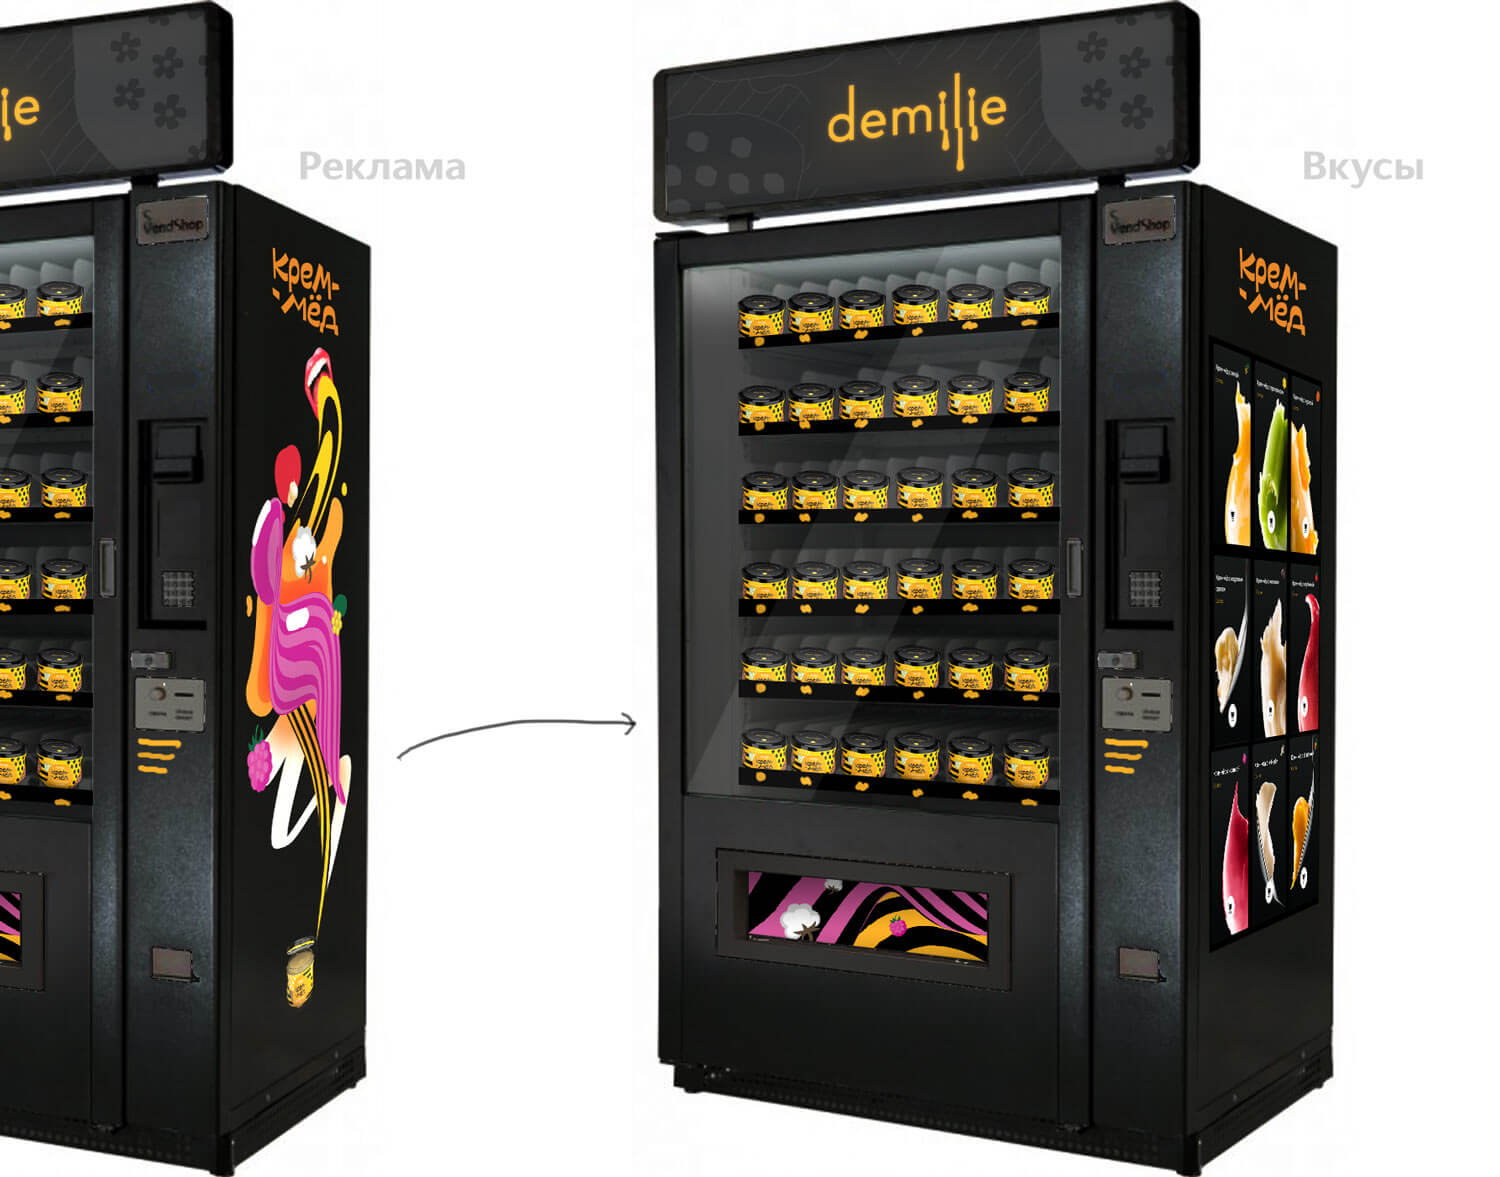 demilie vending process 01